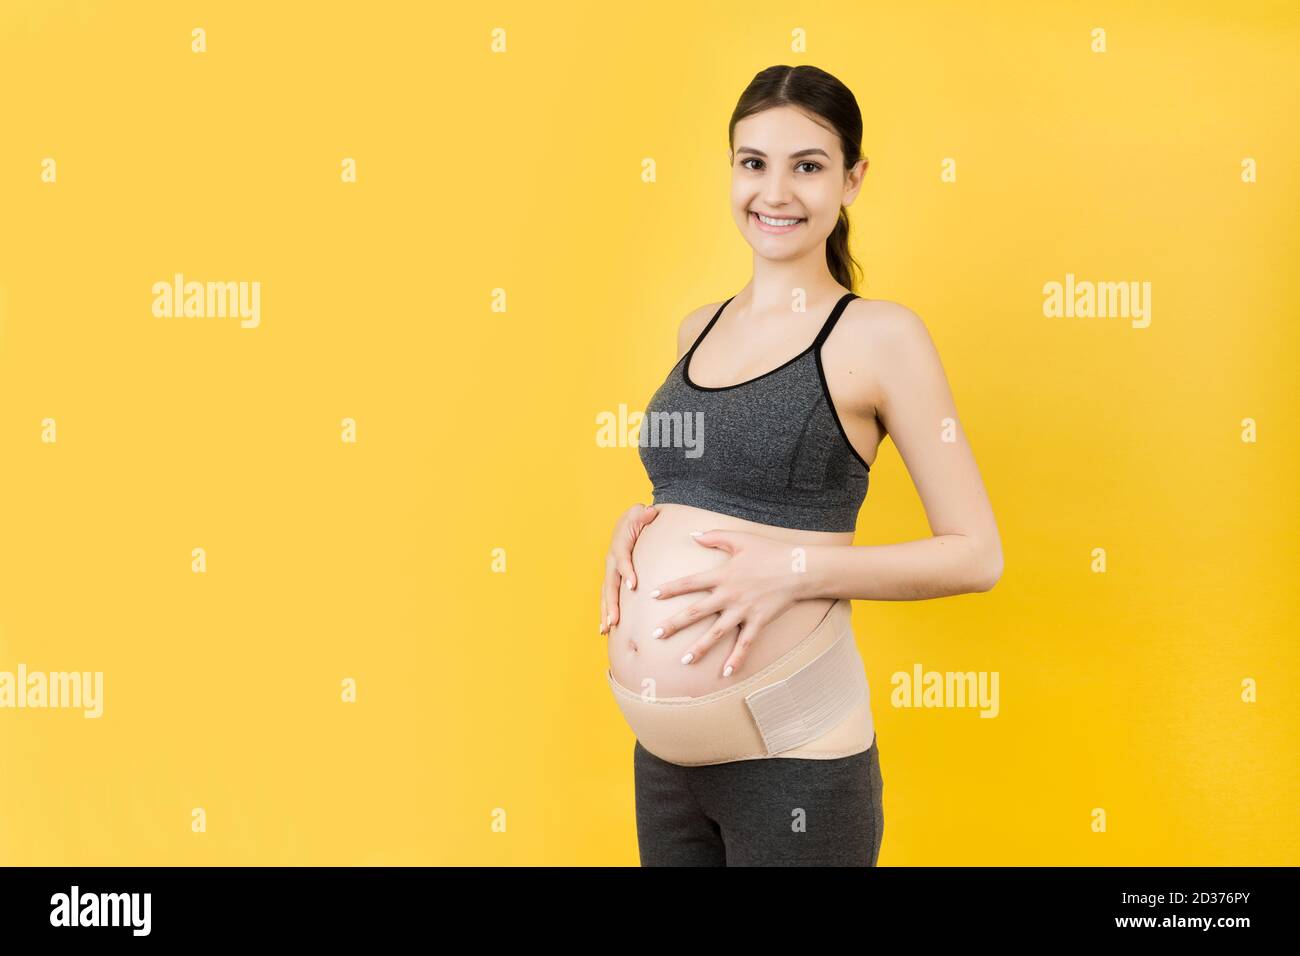 Portrait einer schwangeren Frau mit Schwangerschaftskorsett gegen  Rückenschmerzen auf gelbem Hintergrund mit Kopierraum. Orthopädische  Bauchstützgurt Konzept Stockfotografie - Alamy